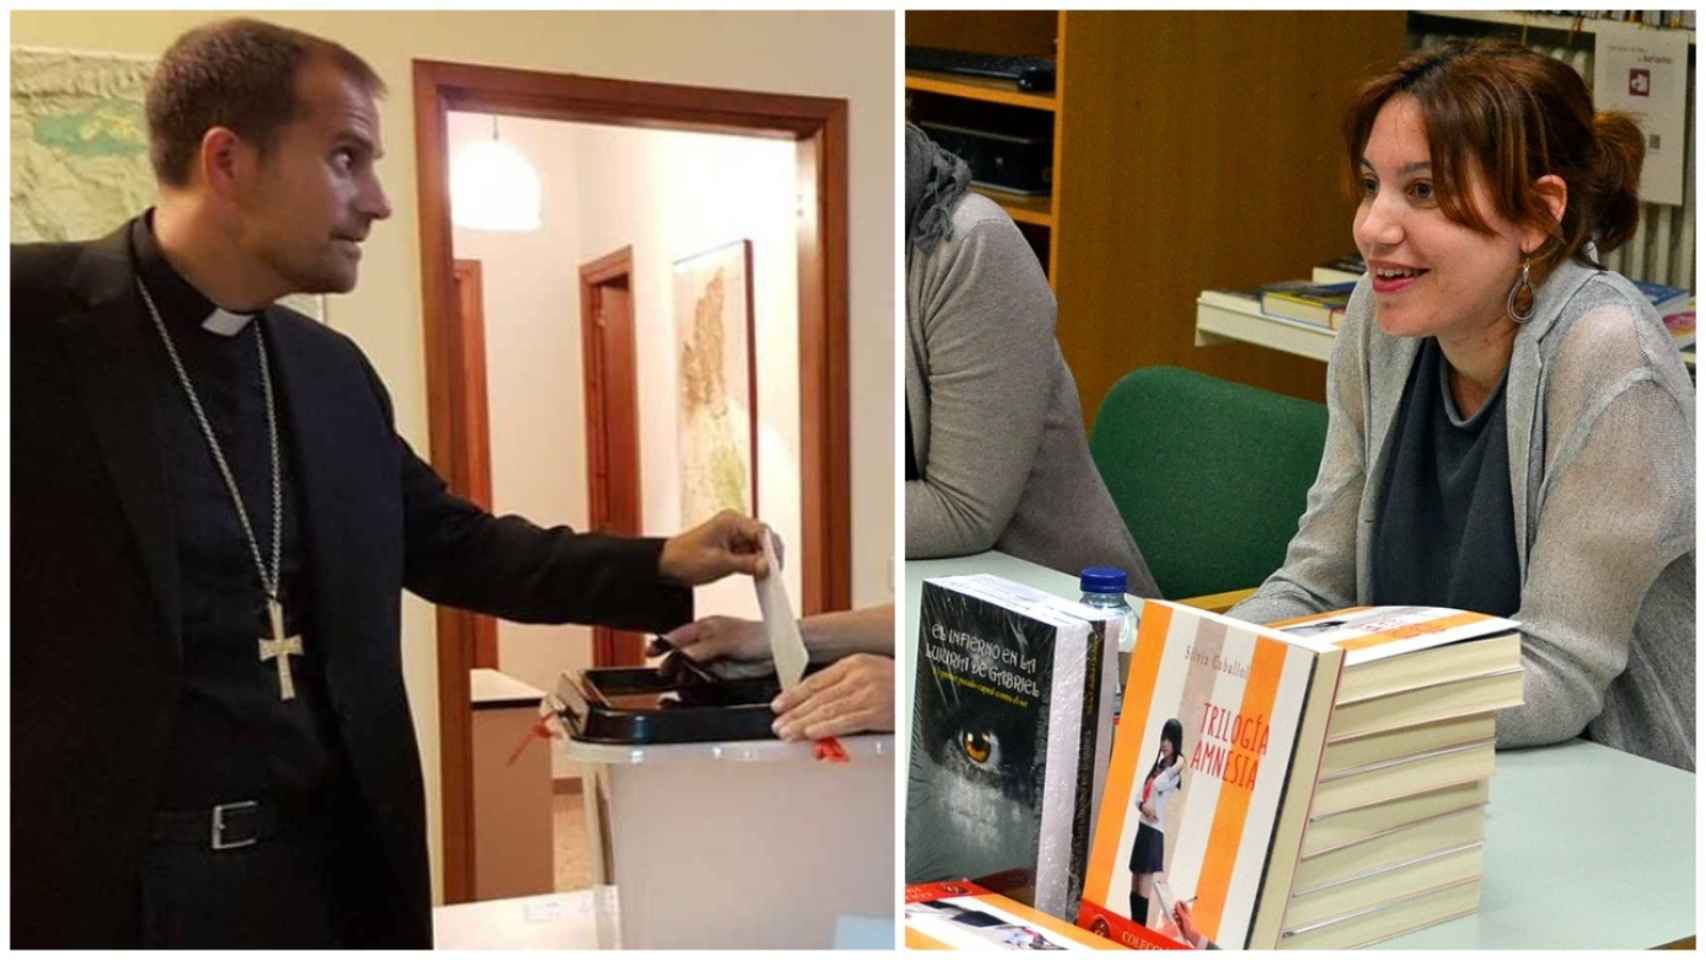 Xavier Novell votando en el referéndum ilegal y Silvia Caballol presentando sus libros.